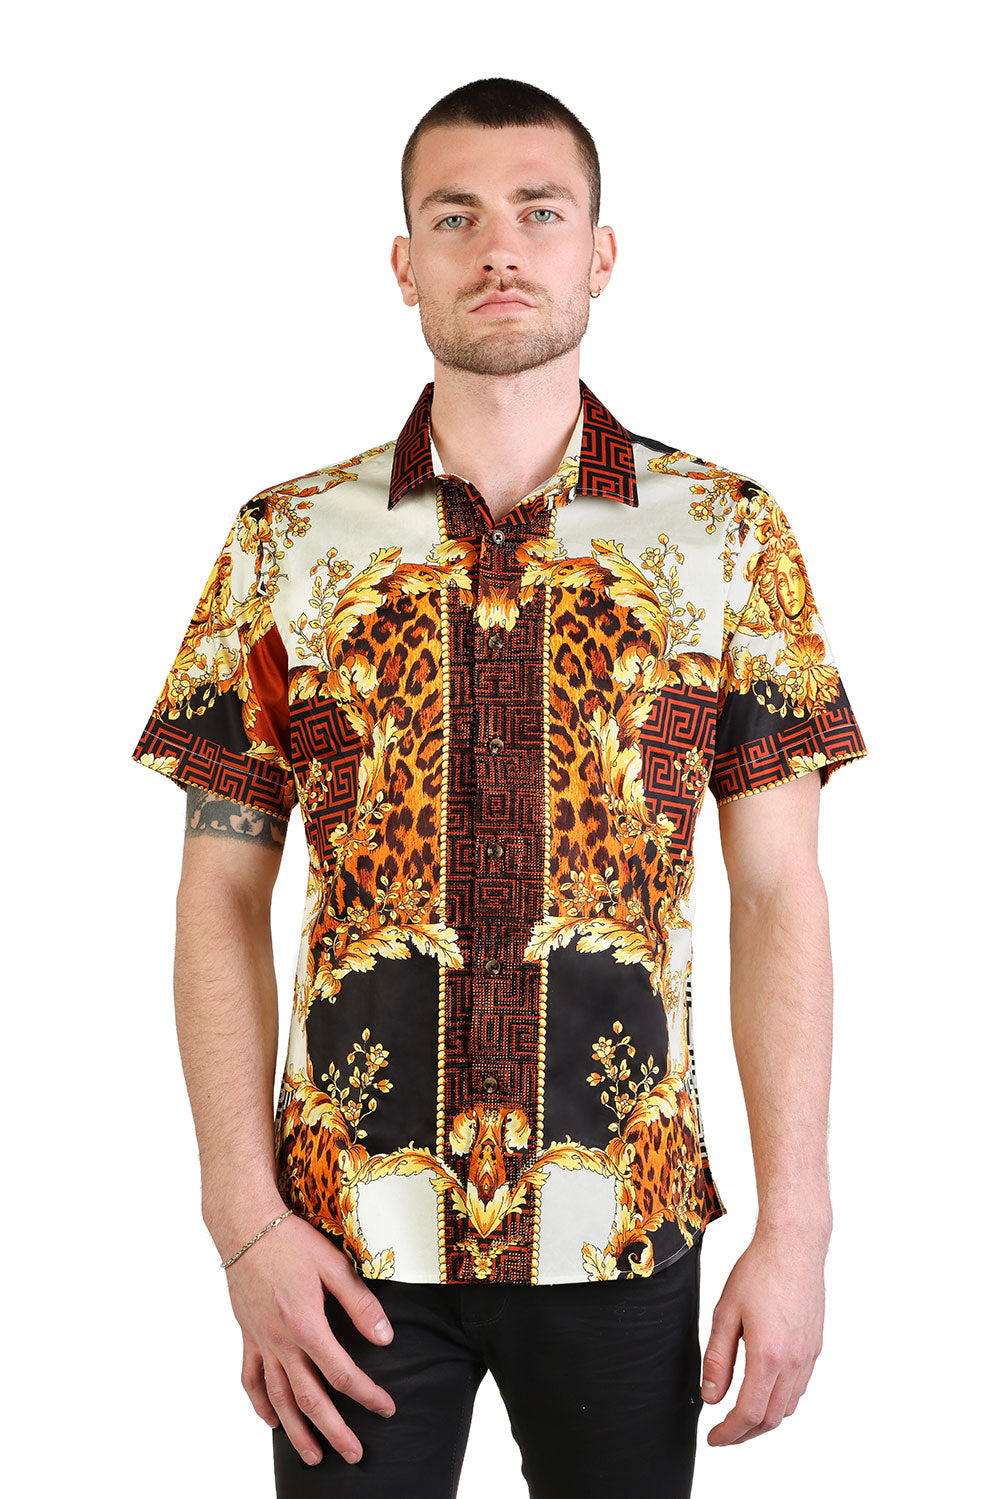 BARABAS Men's Floral Greek Pattern Baroque Short Sleeve Shirt SSR01 Gold Black